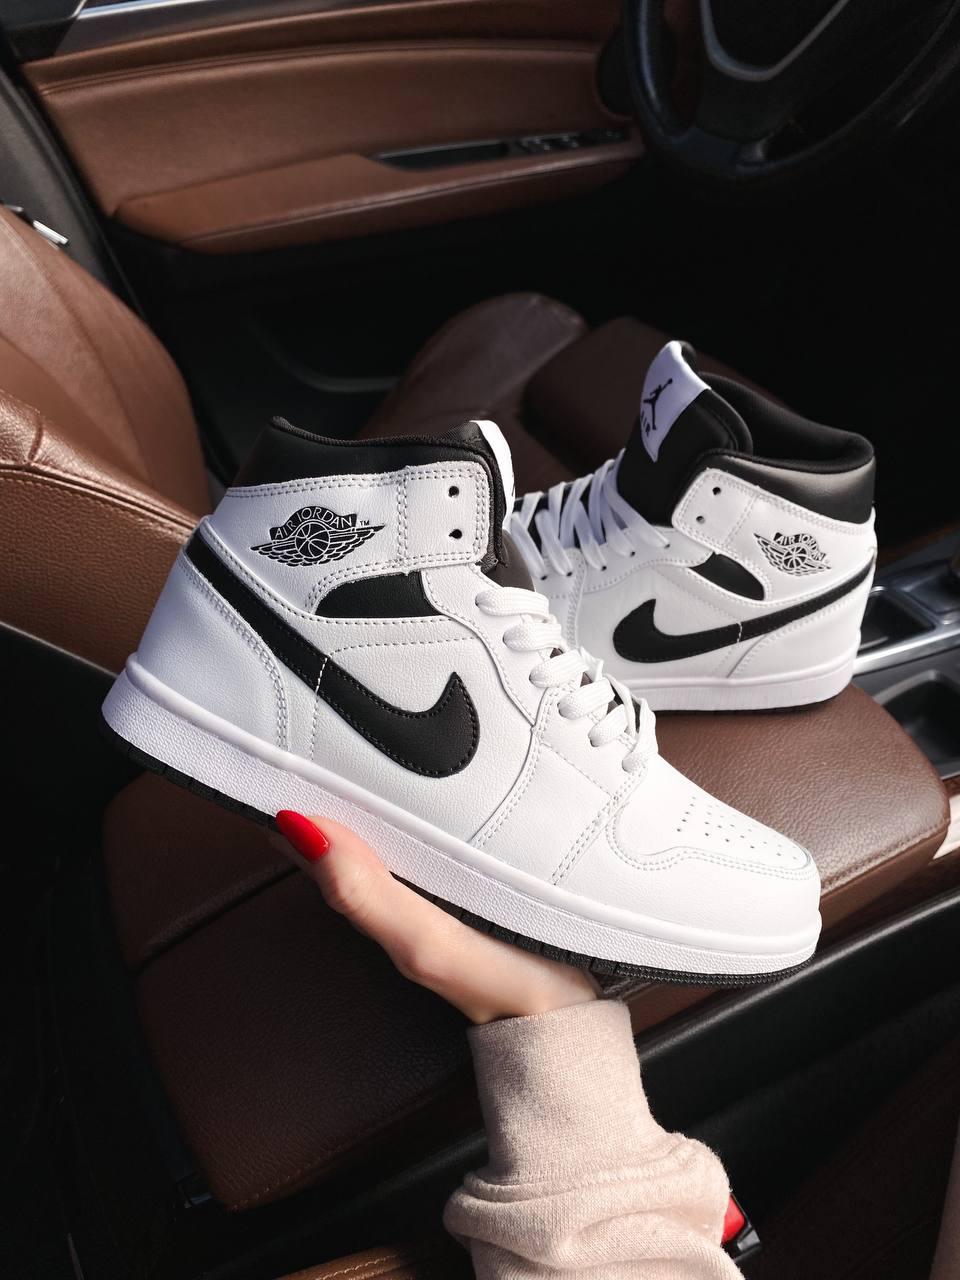 Жіночі кросівки Nike Air Jordan 1 Retro High Black White | Найк Аір Джордан 1